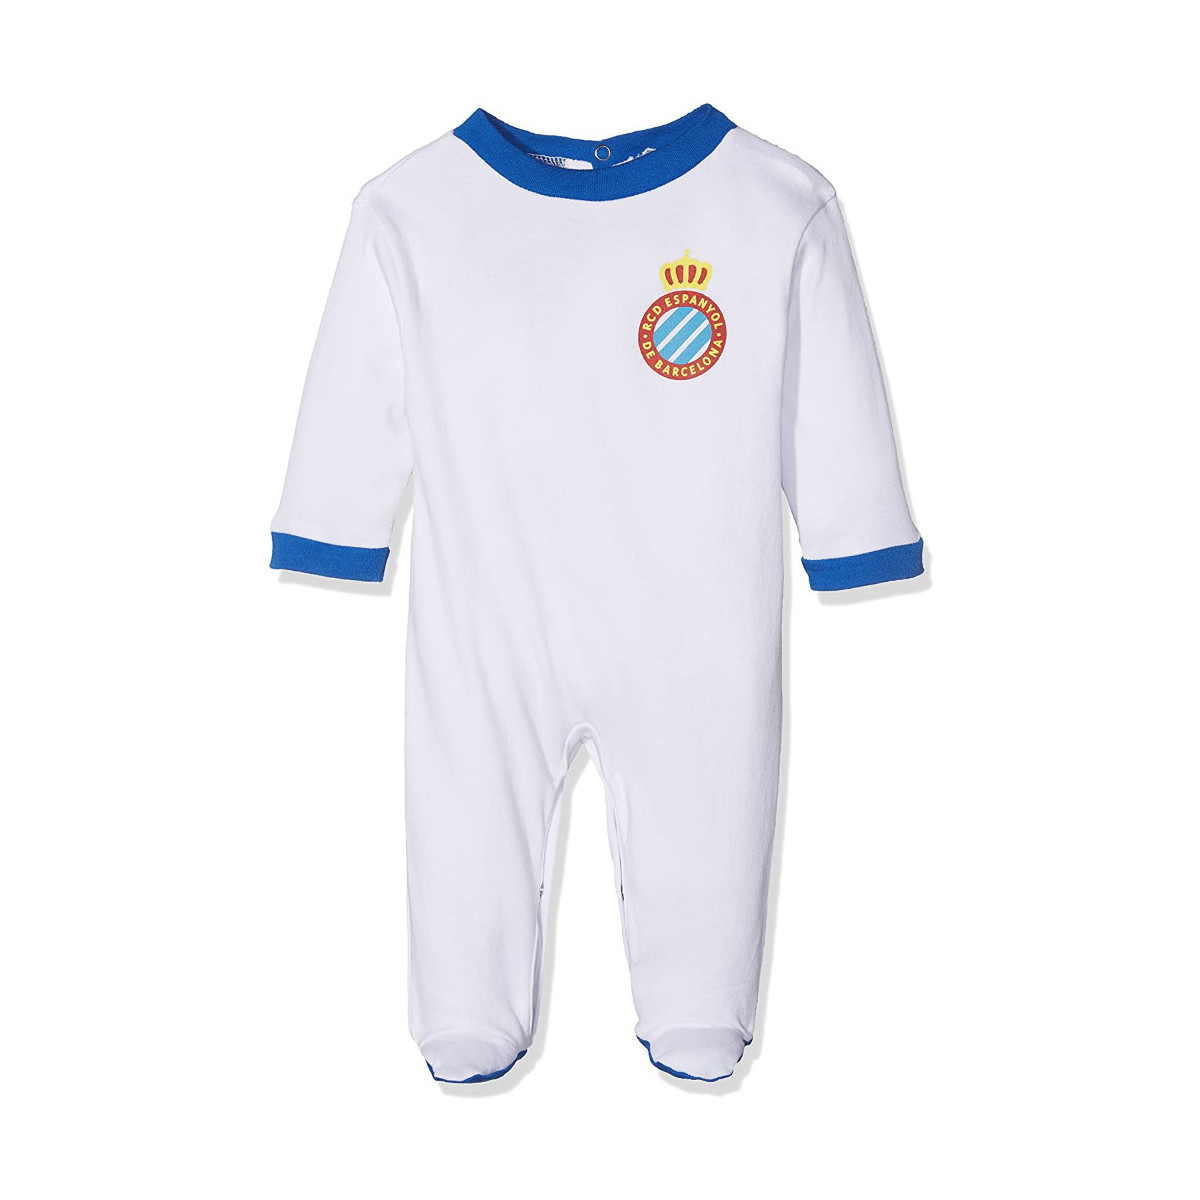 Textil Criança Pijamas / Camisas de dormir Rcde Espanyol 61937 Branco